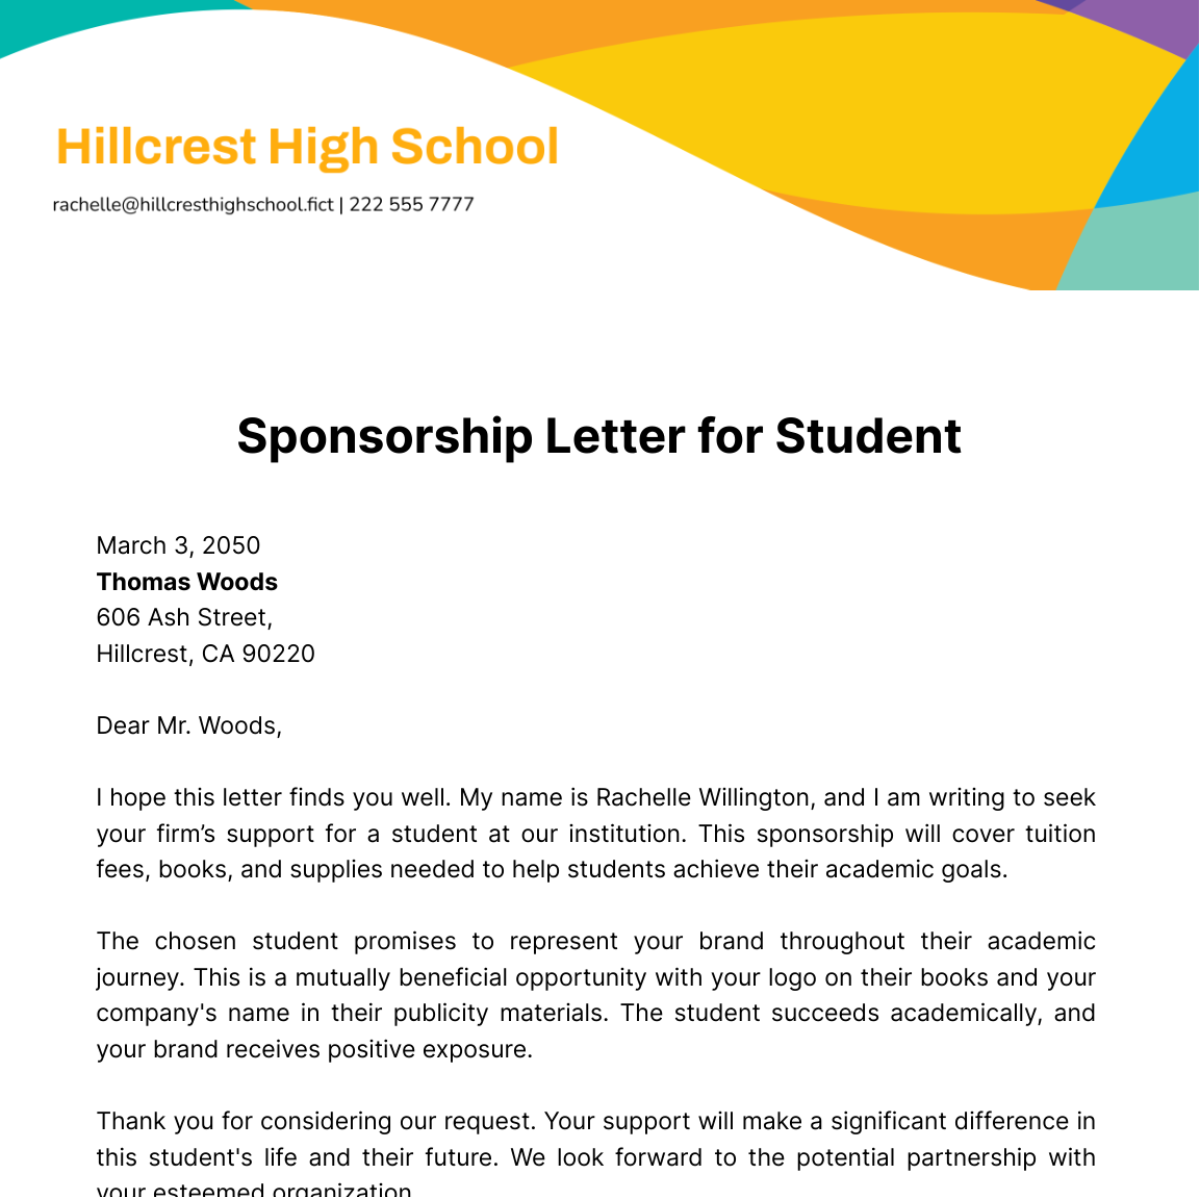 Sponsorship Letter for Student Template